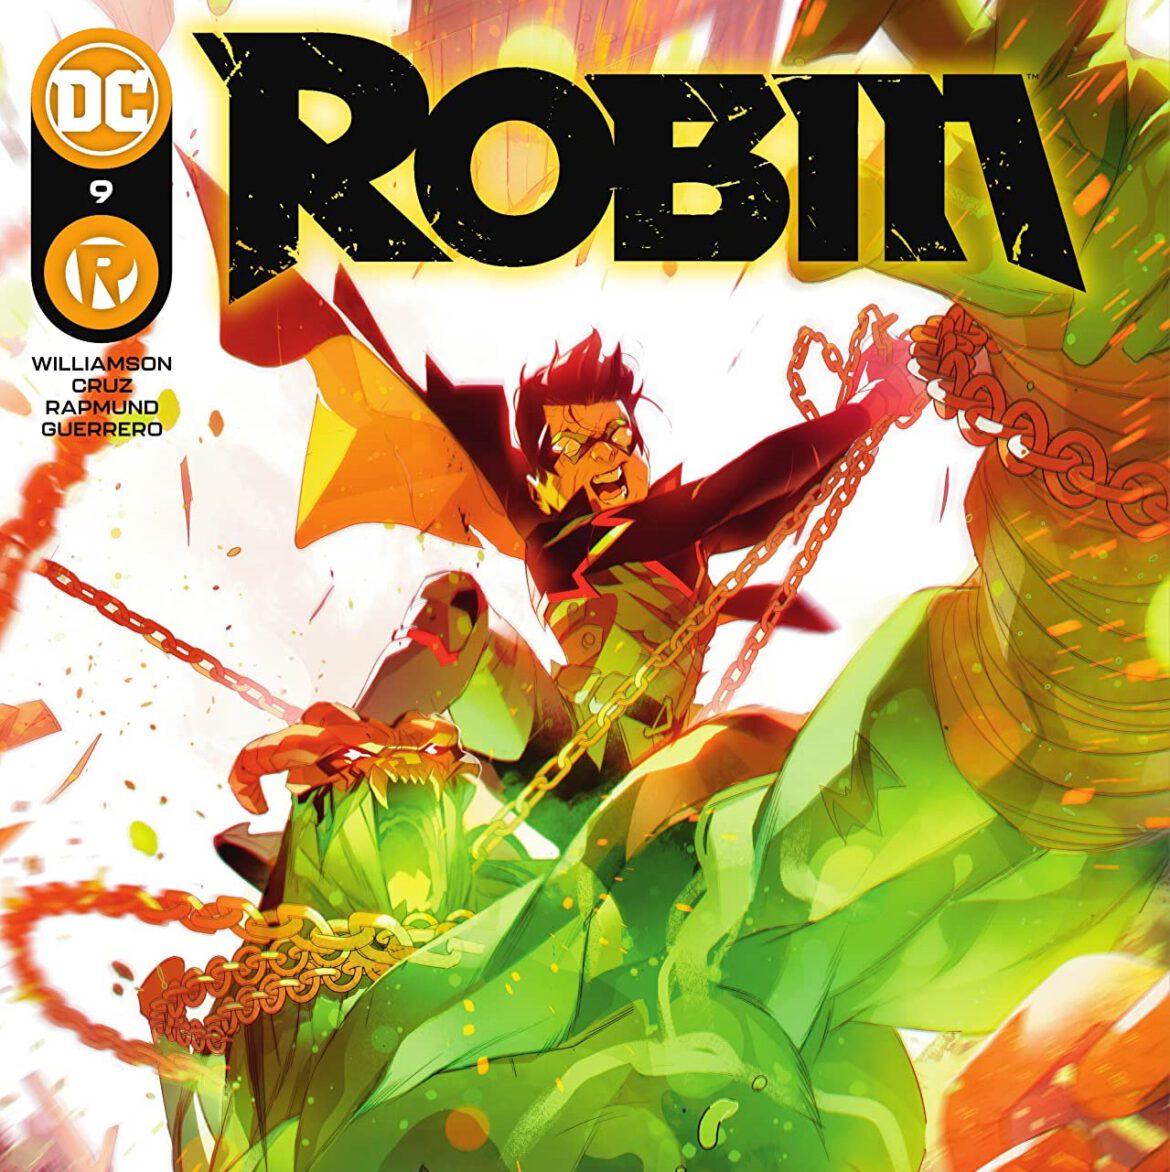 Robin #9